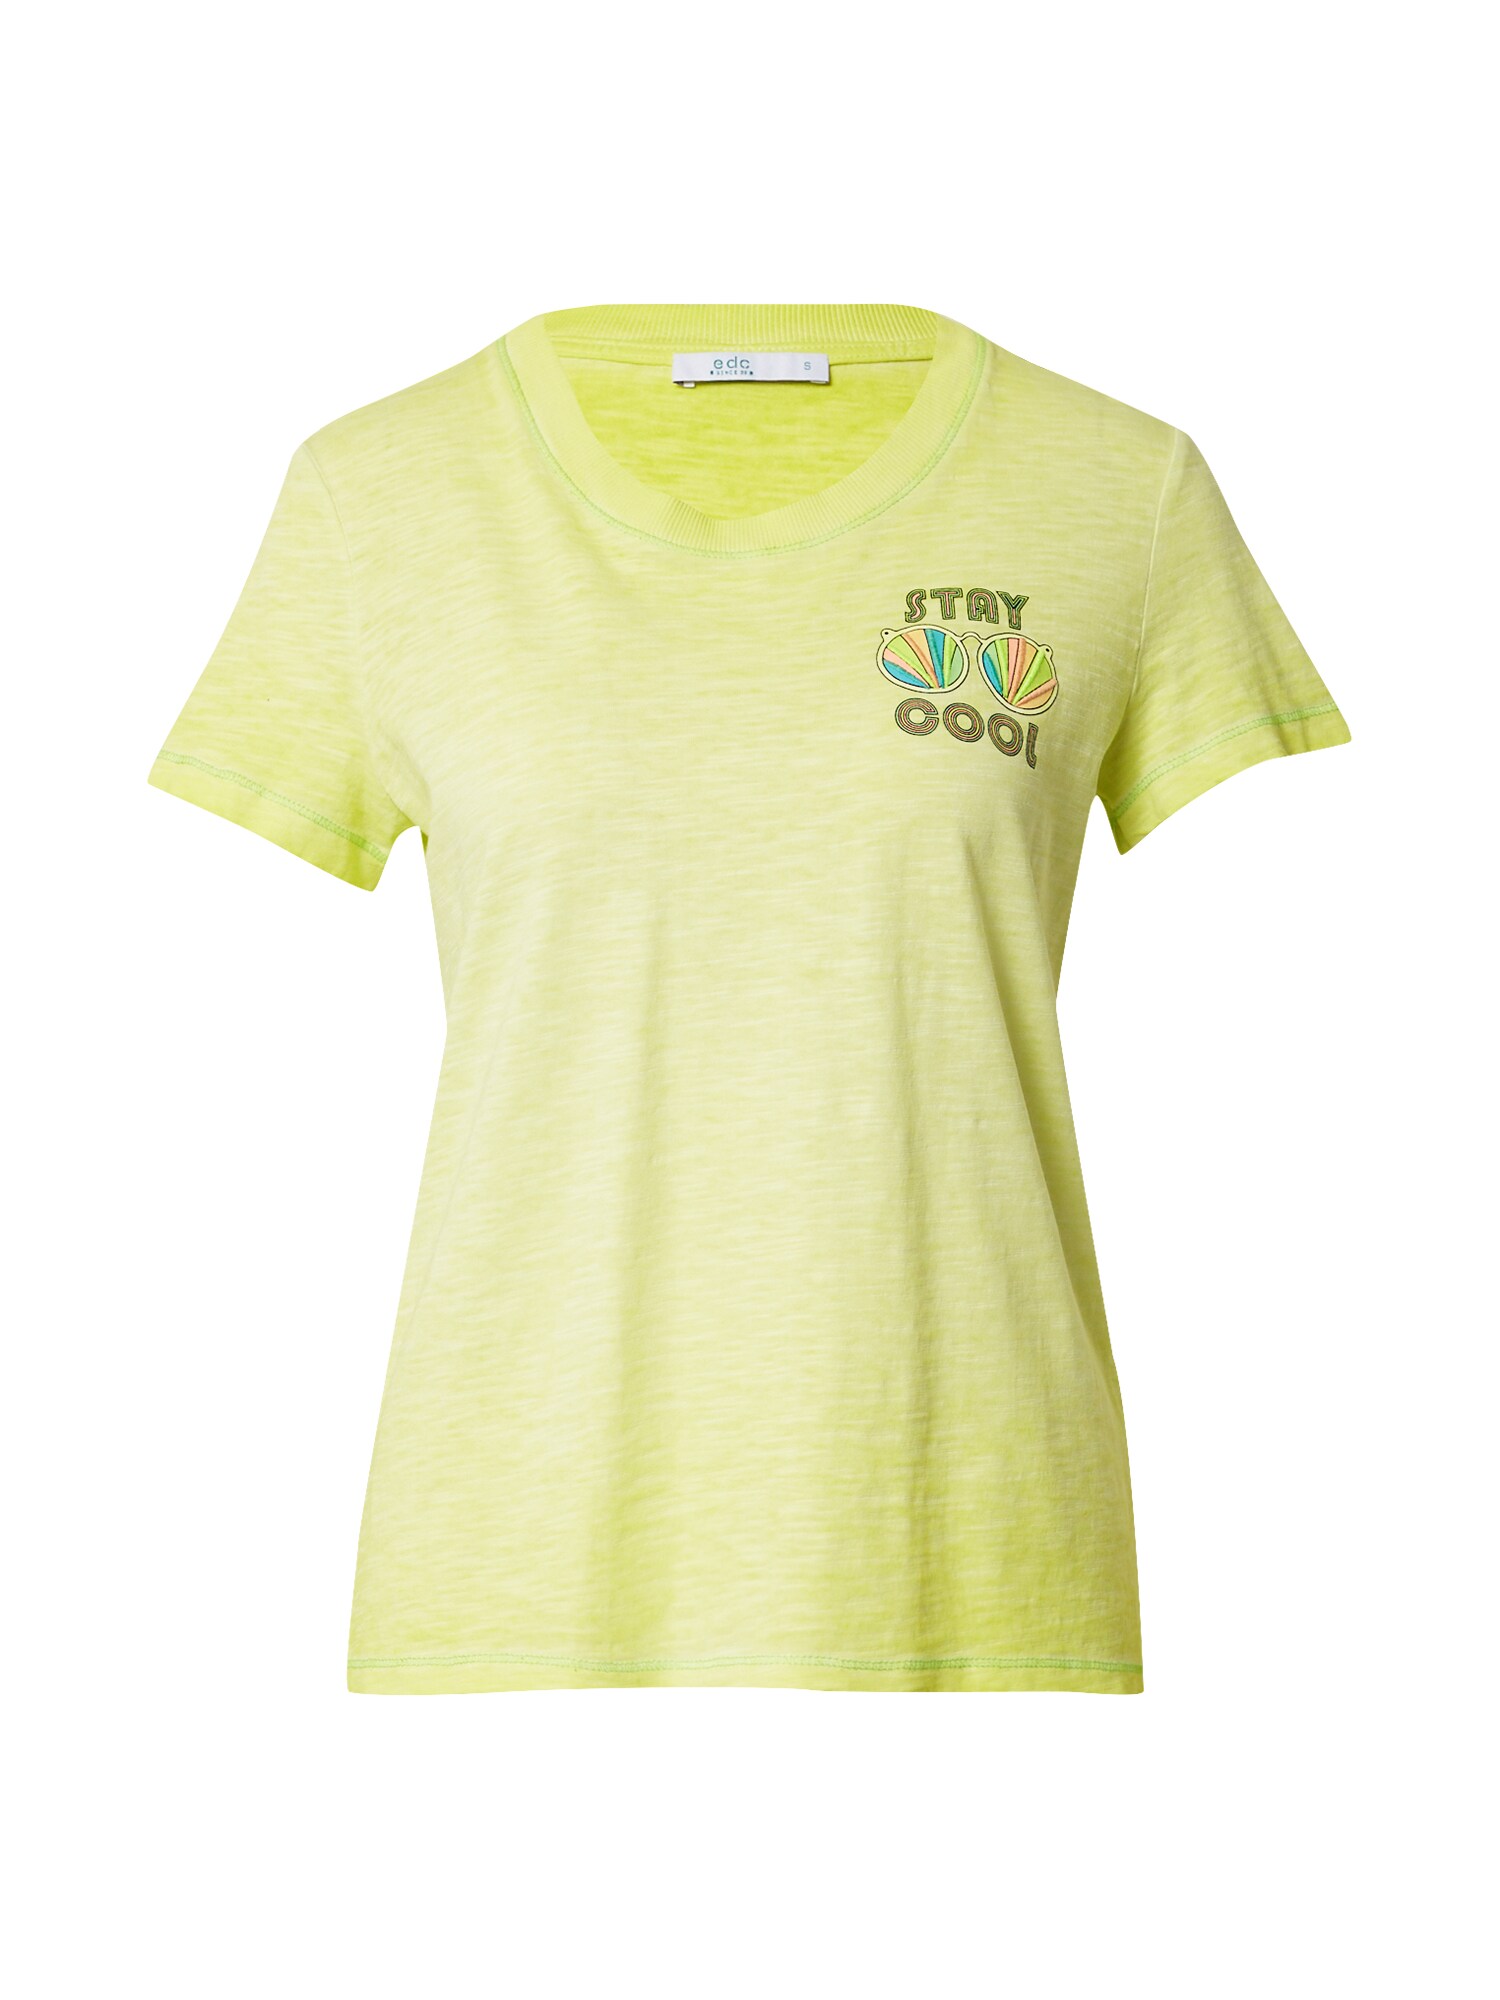 EDC BY ESPRIT Marškinėliai  žaliosios citrinos spalva / mišrios spalvos